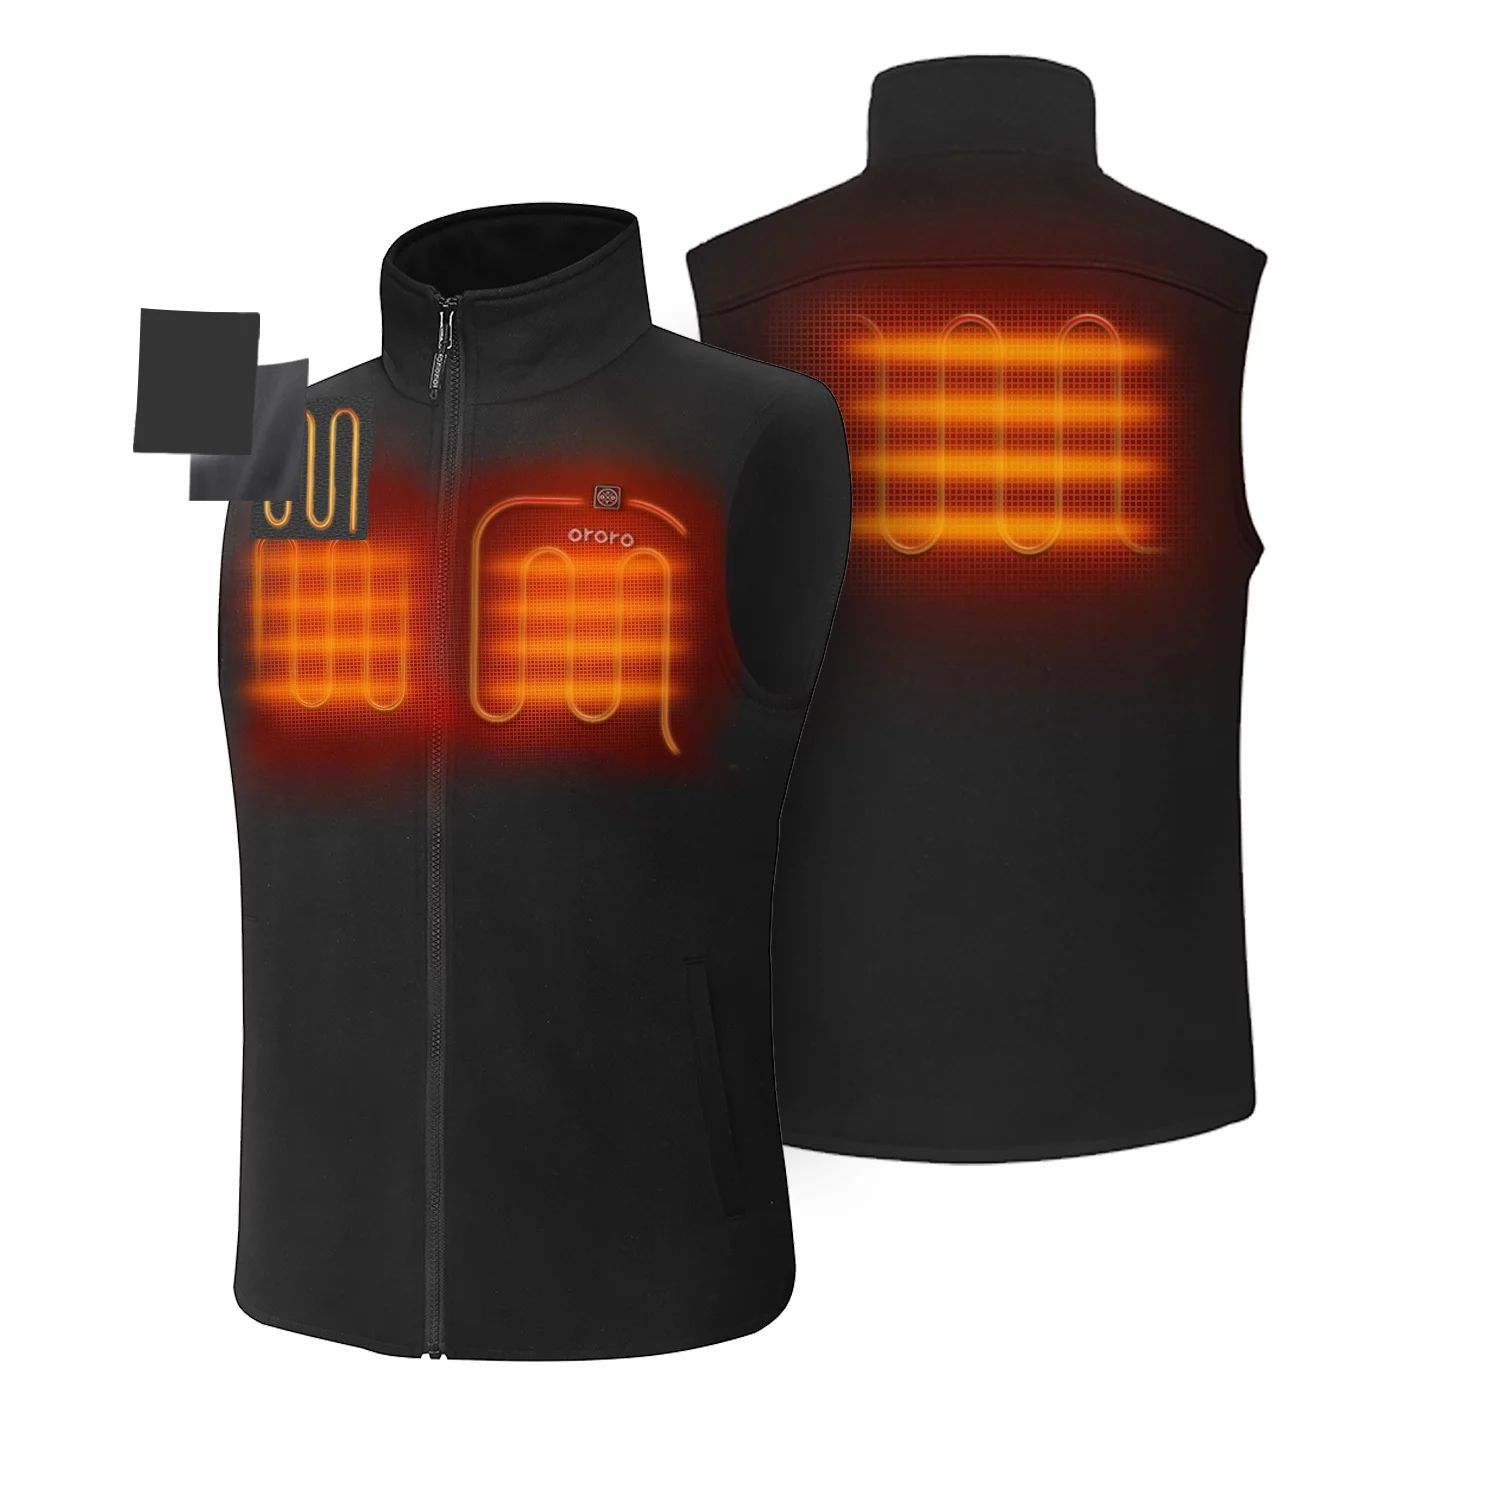 ORORO Men's Fleece Heated Vest with Battery Pack - Walmart.com | Walmart (US)